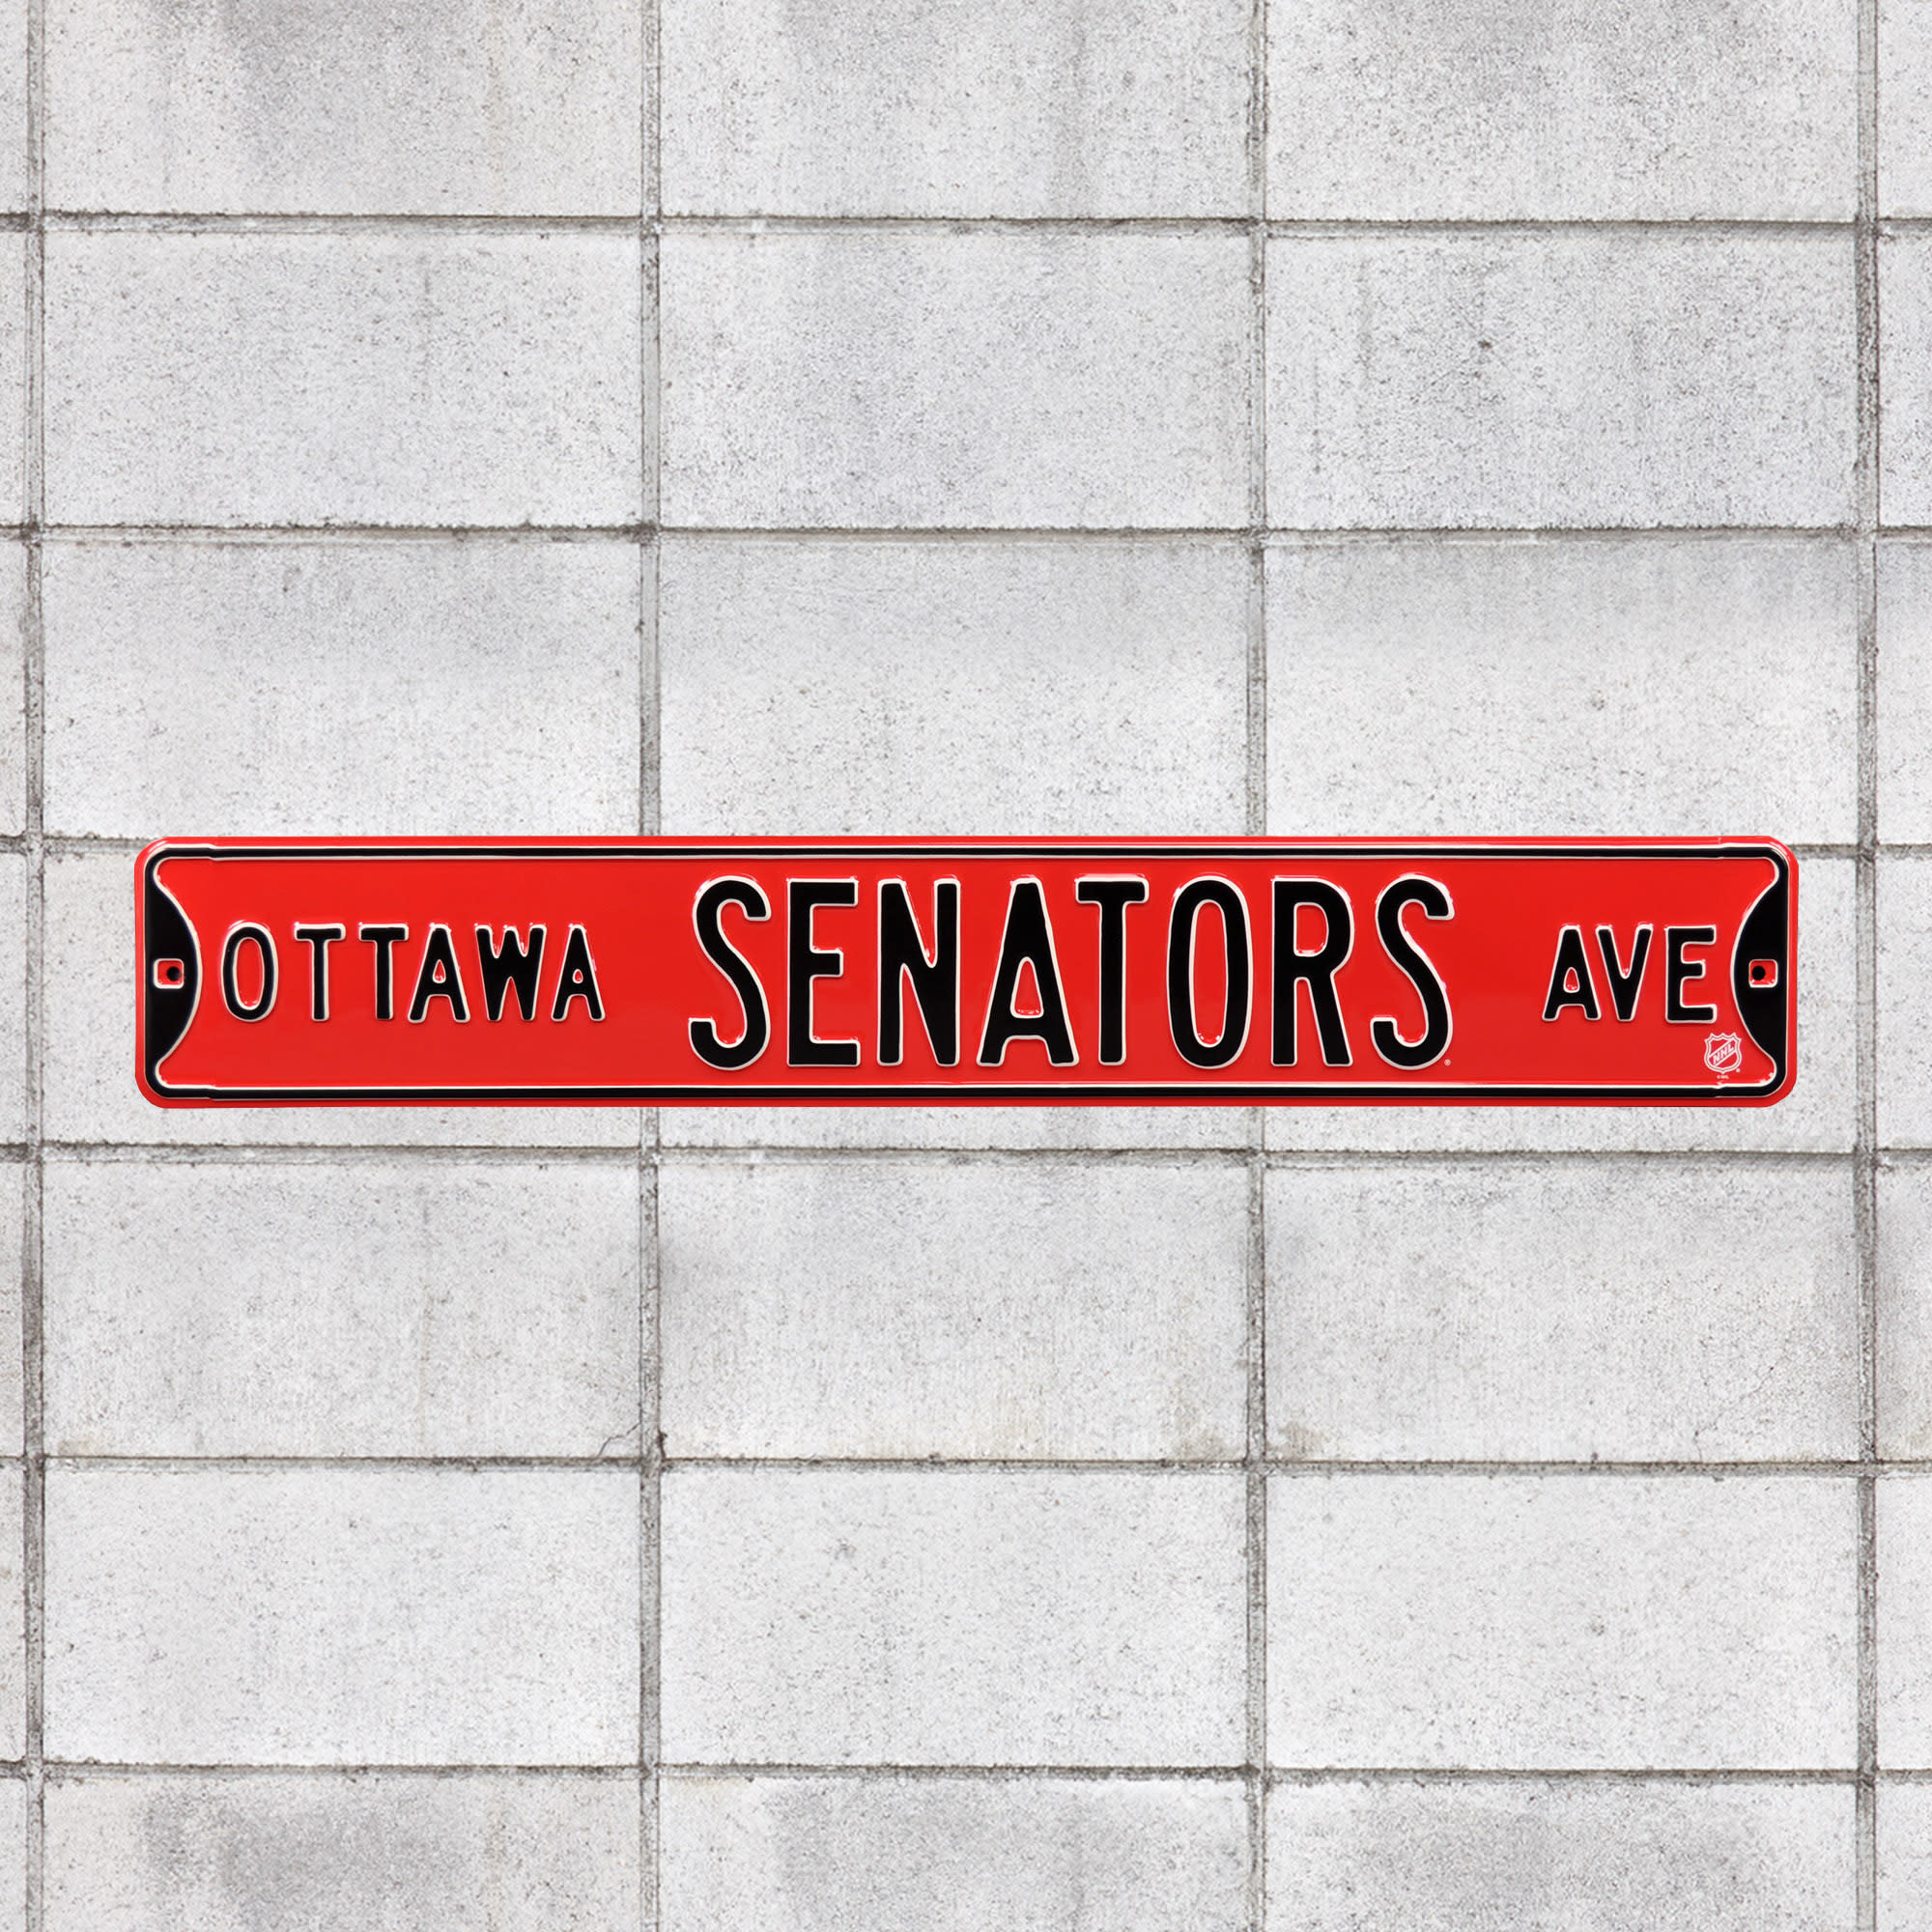 Ottawa Senators: Ottawa Senators Avenue - Officially Licensed NHL Metal Street Sign 36.0"W x 6.0"H by Fathead | 100% Steel